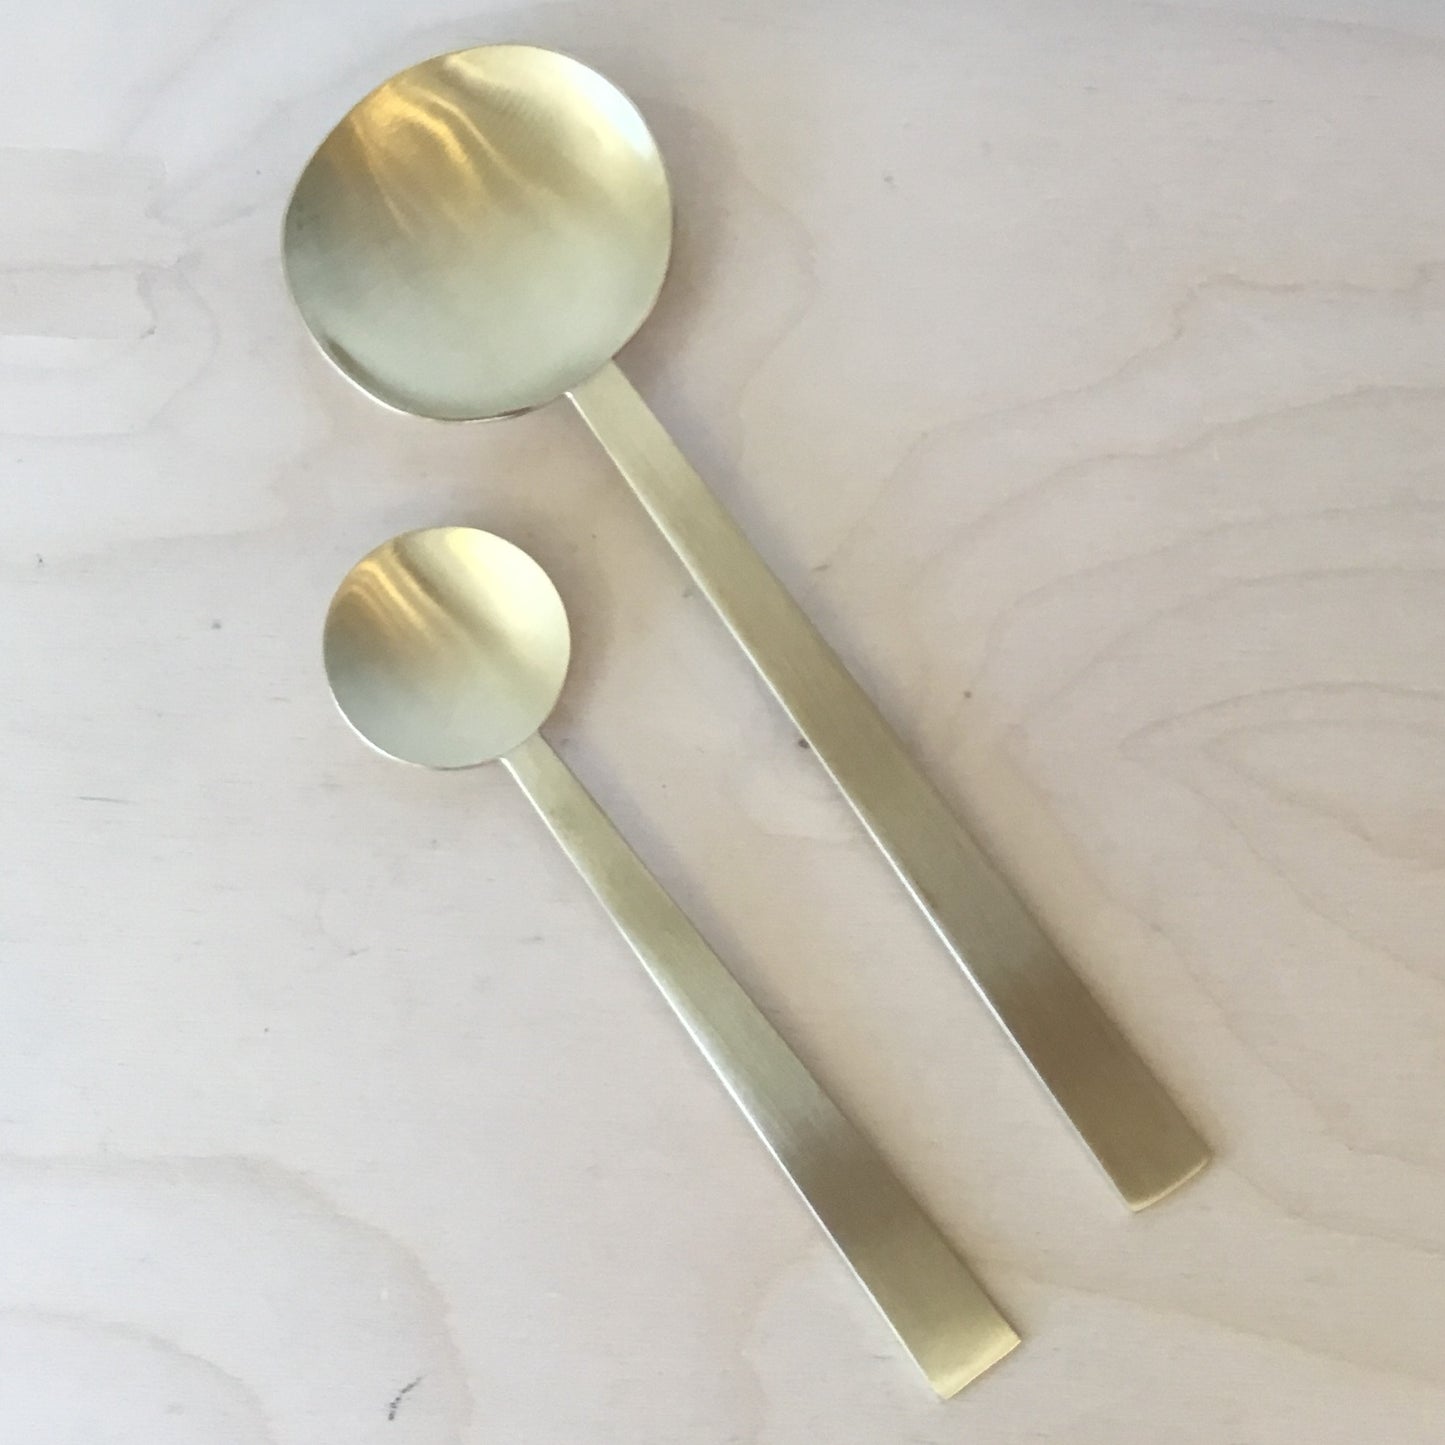 Hand-hammered Round Brass Spoon